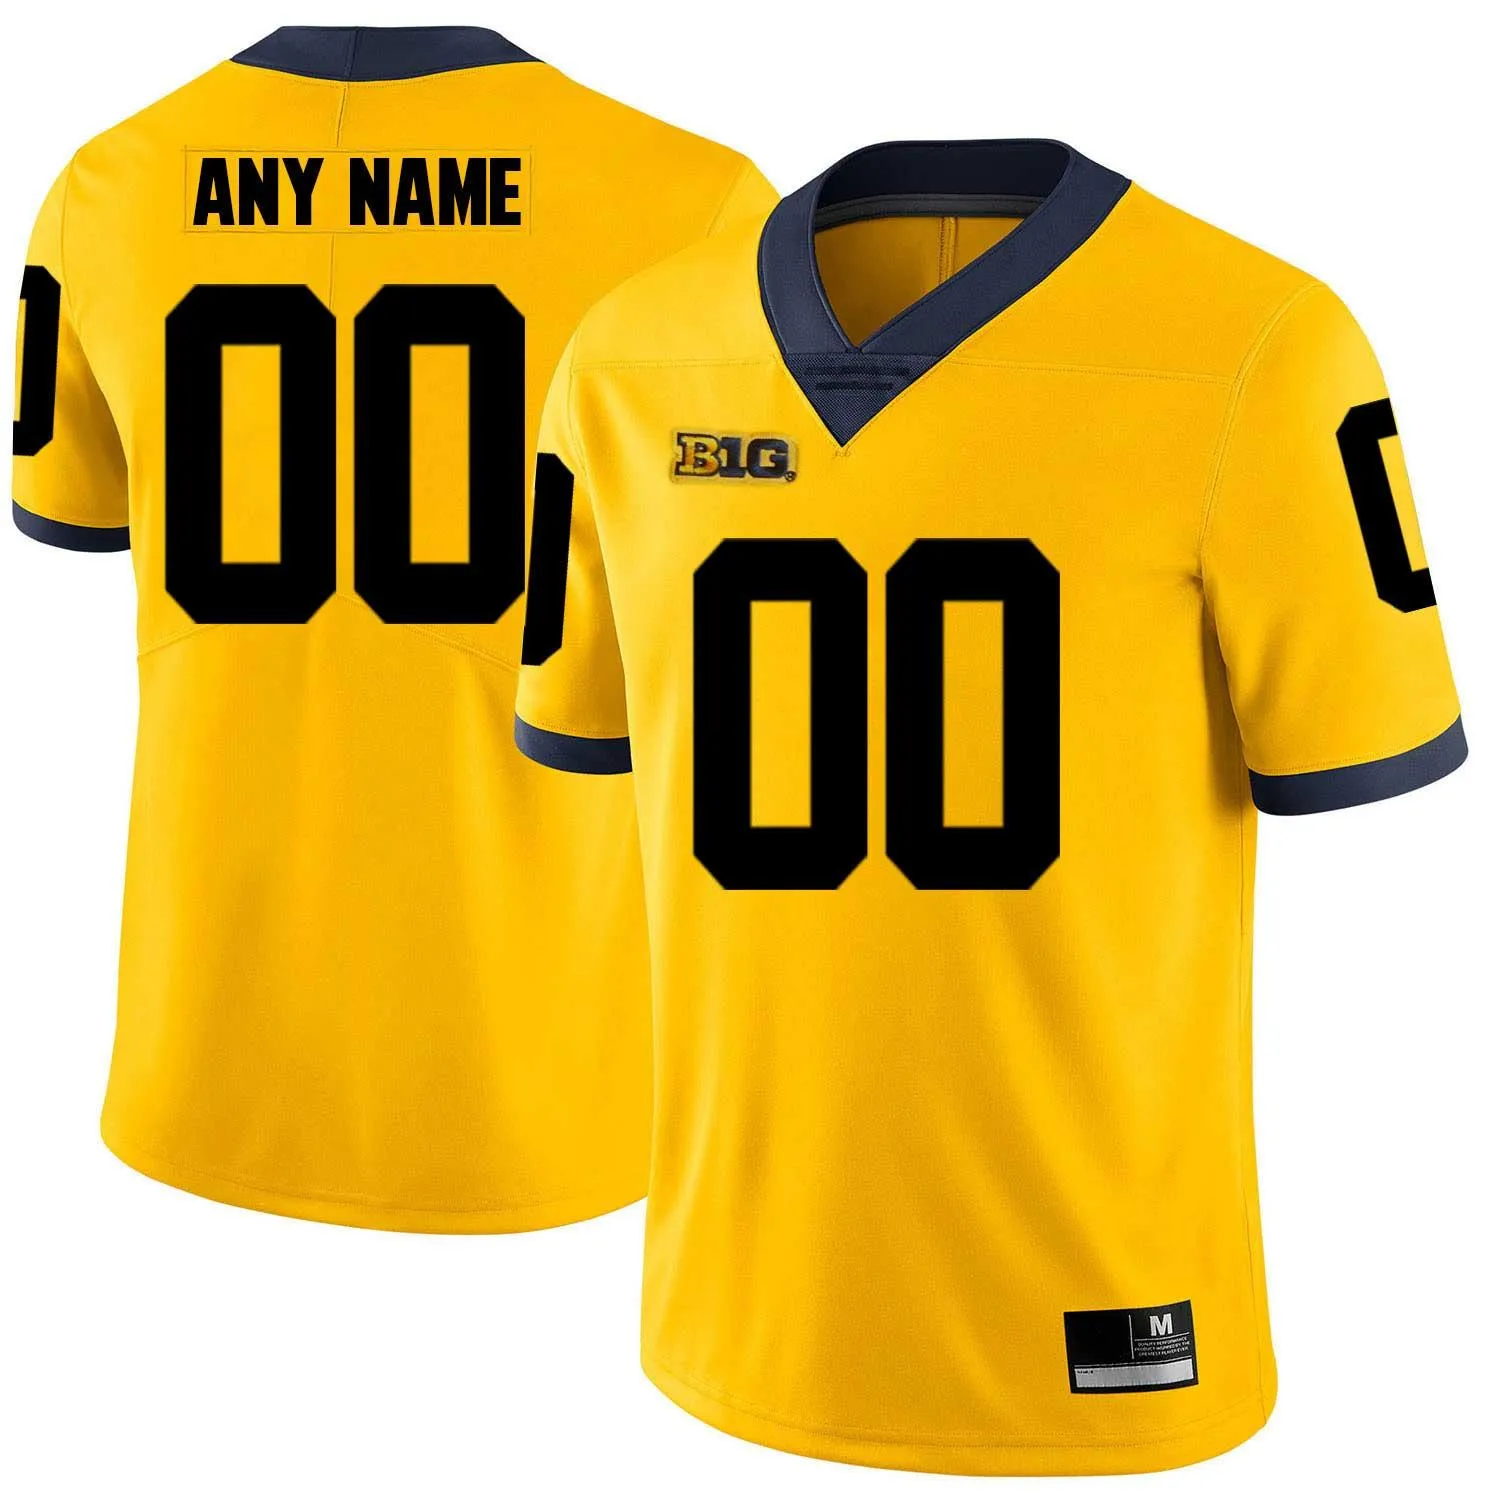 Мужские молодежные футболки Michigan Woerines на заказ, любое имя, любой номер, персонализированные детские футбольные майки для мужчин дома и в гостях Ncaa College Football